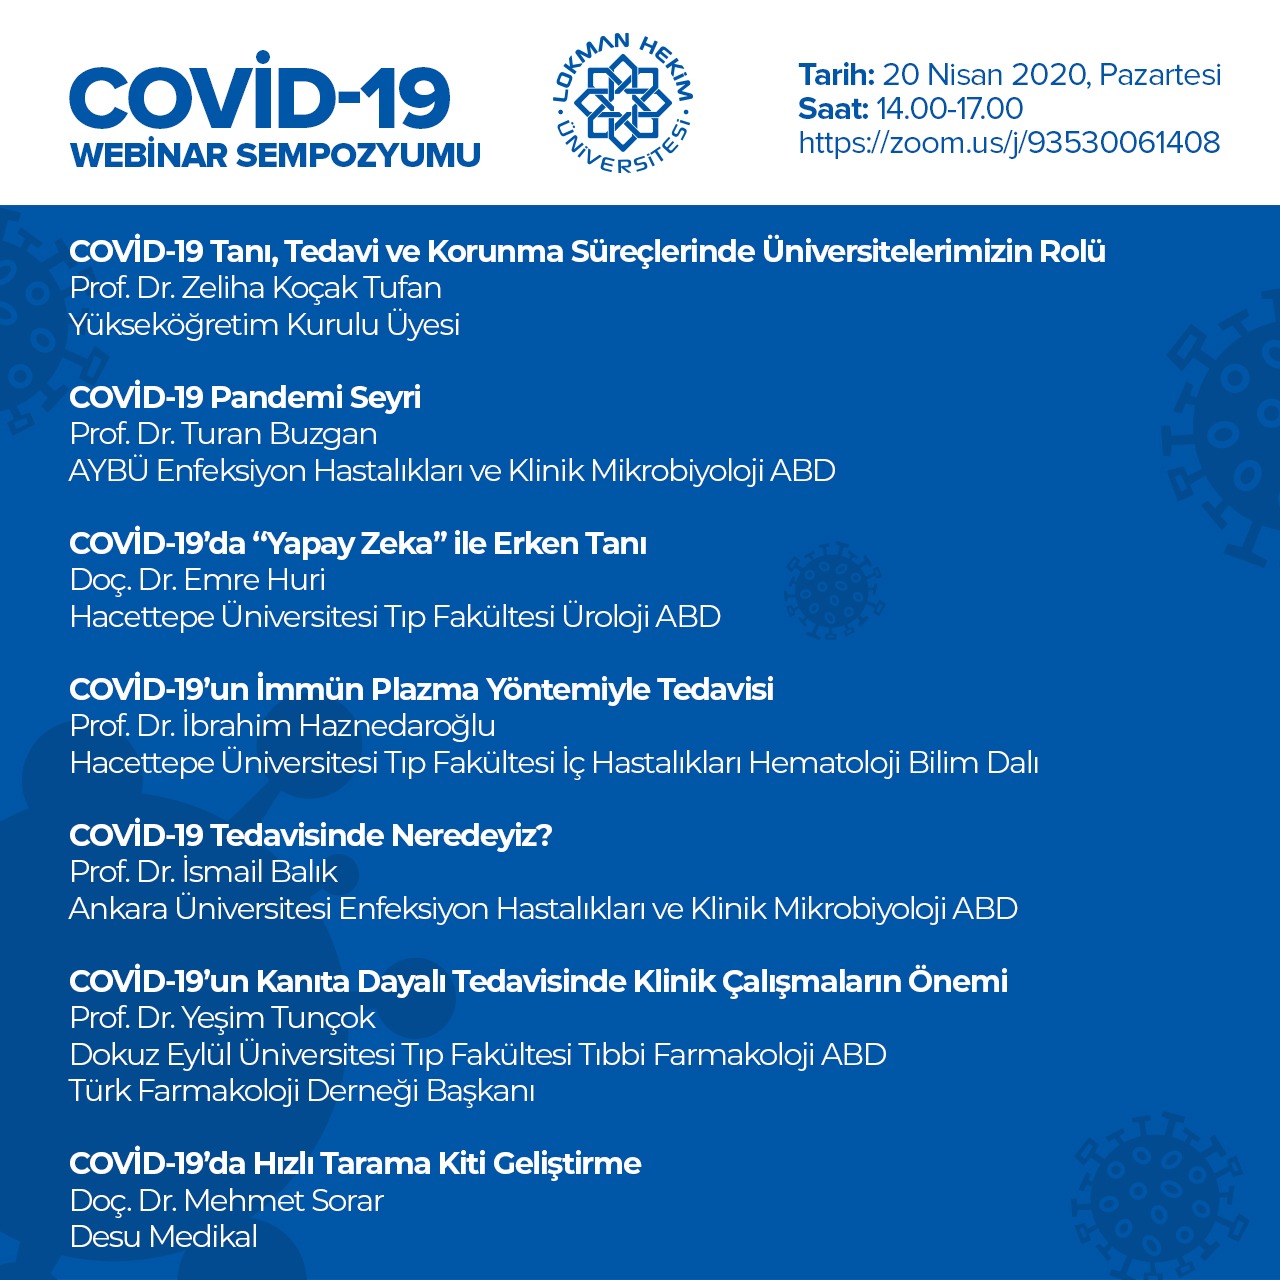 “COVID-19’da Erken Tanı, Erken Tedavi ve Korunmada Türkiye”